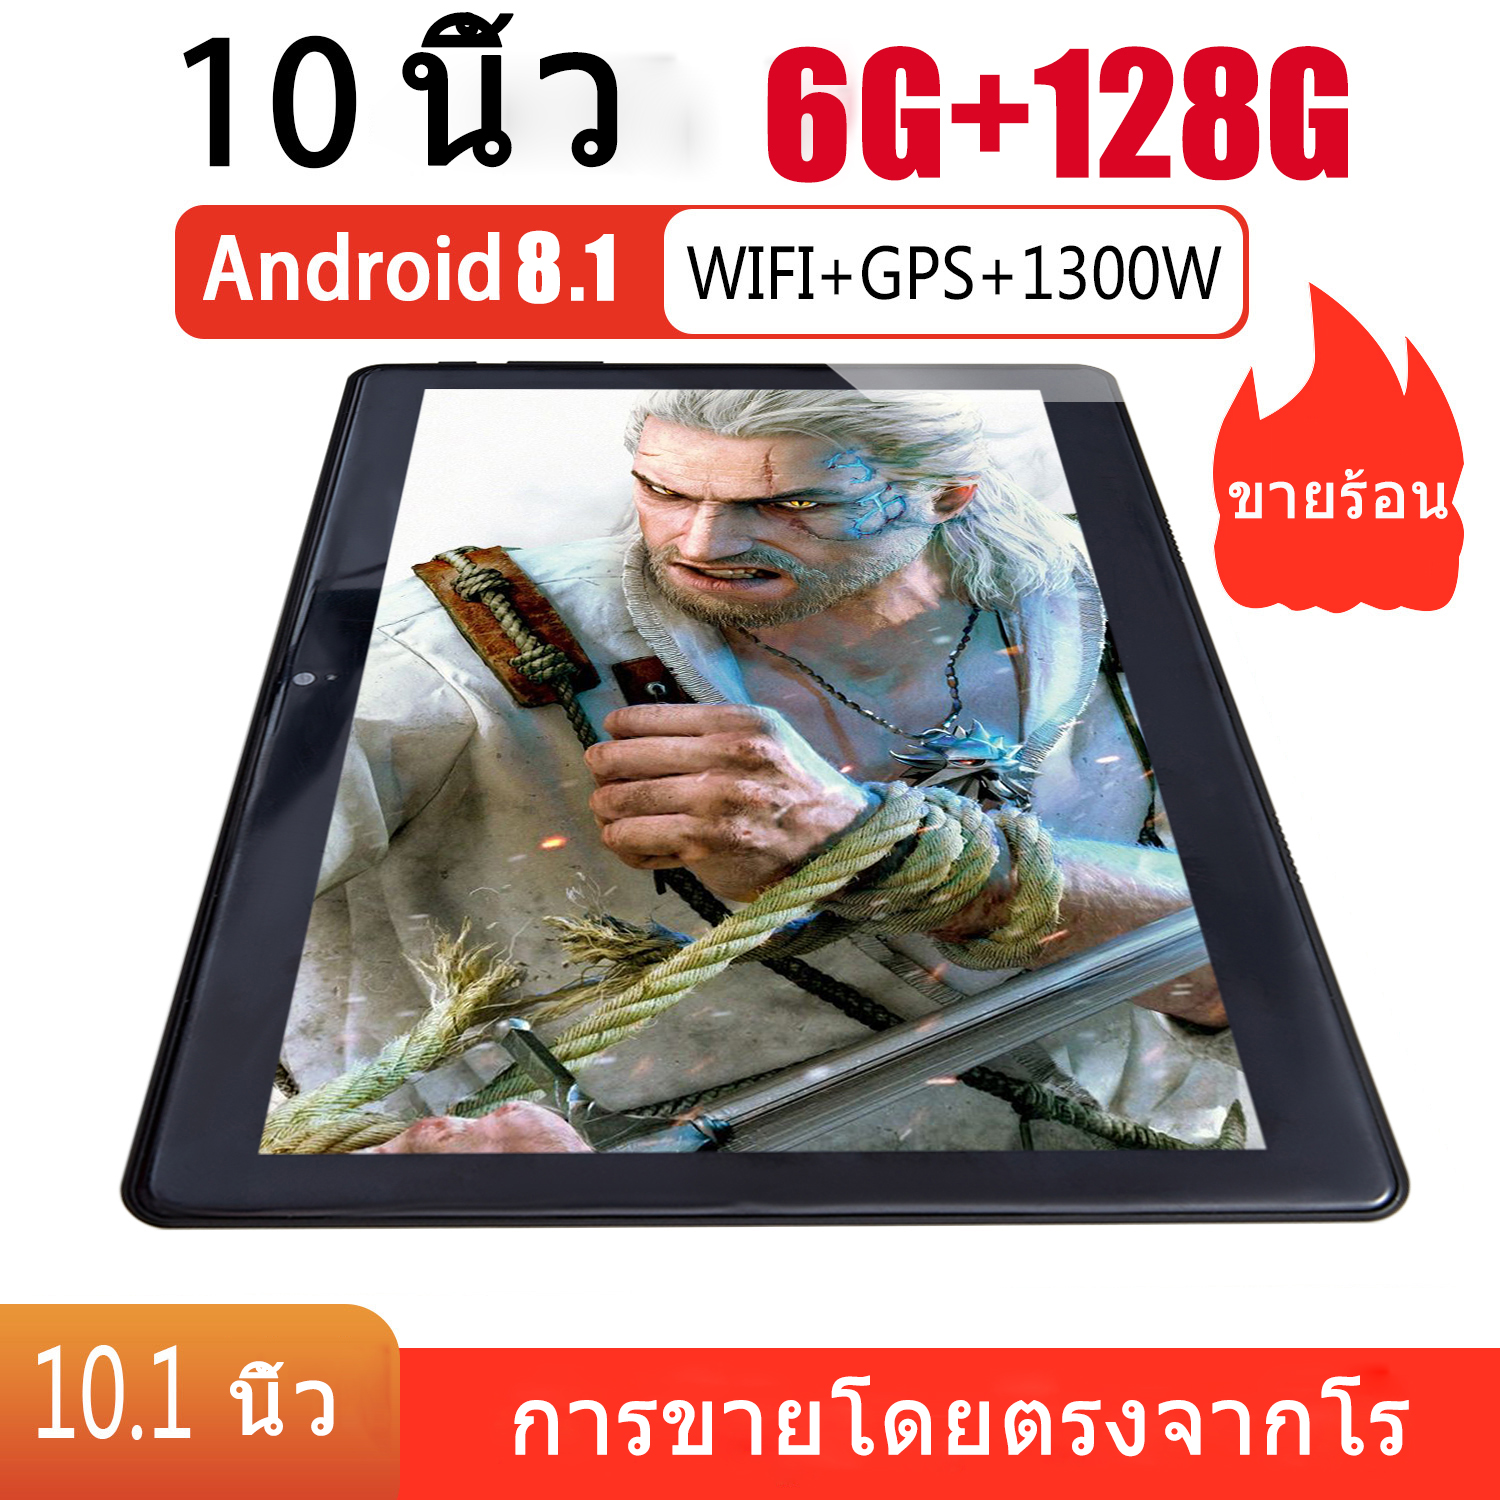 แท็บเล็ตหน้าจอโค้งแบบ HD 5D 10 inch HD Tablet แท็บเล็ตขนาด 10 นิ้วHD 5D curved screen tablet แท็บเล็ต Dolby Sound 3D Surround SoundGPS Bluetooth WIFI แท็บเล็ตพีซีแท็บเล็ตหน้าจอ แท็บเล็ตหน้าจอขนาดใหญ่แท็บเล็ต WiFi 5G แท็บเล็ตนักศึกษาธุรกิจแท็บเล็ต